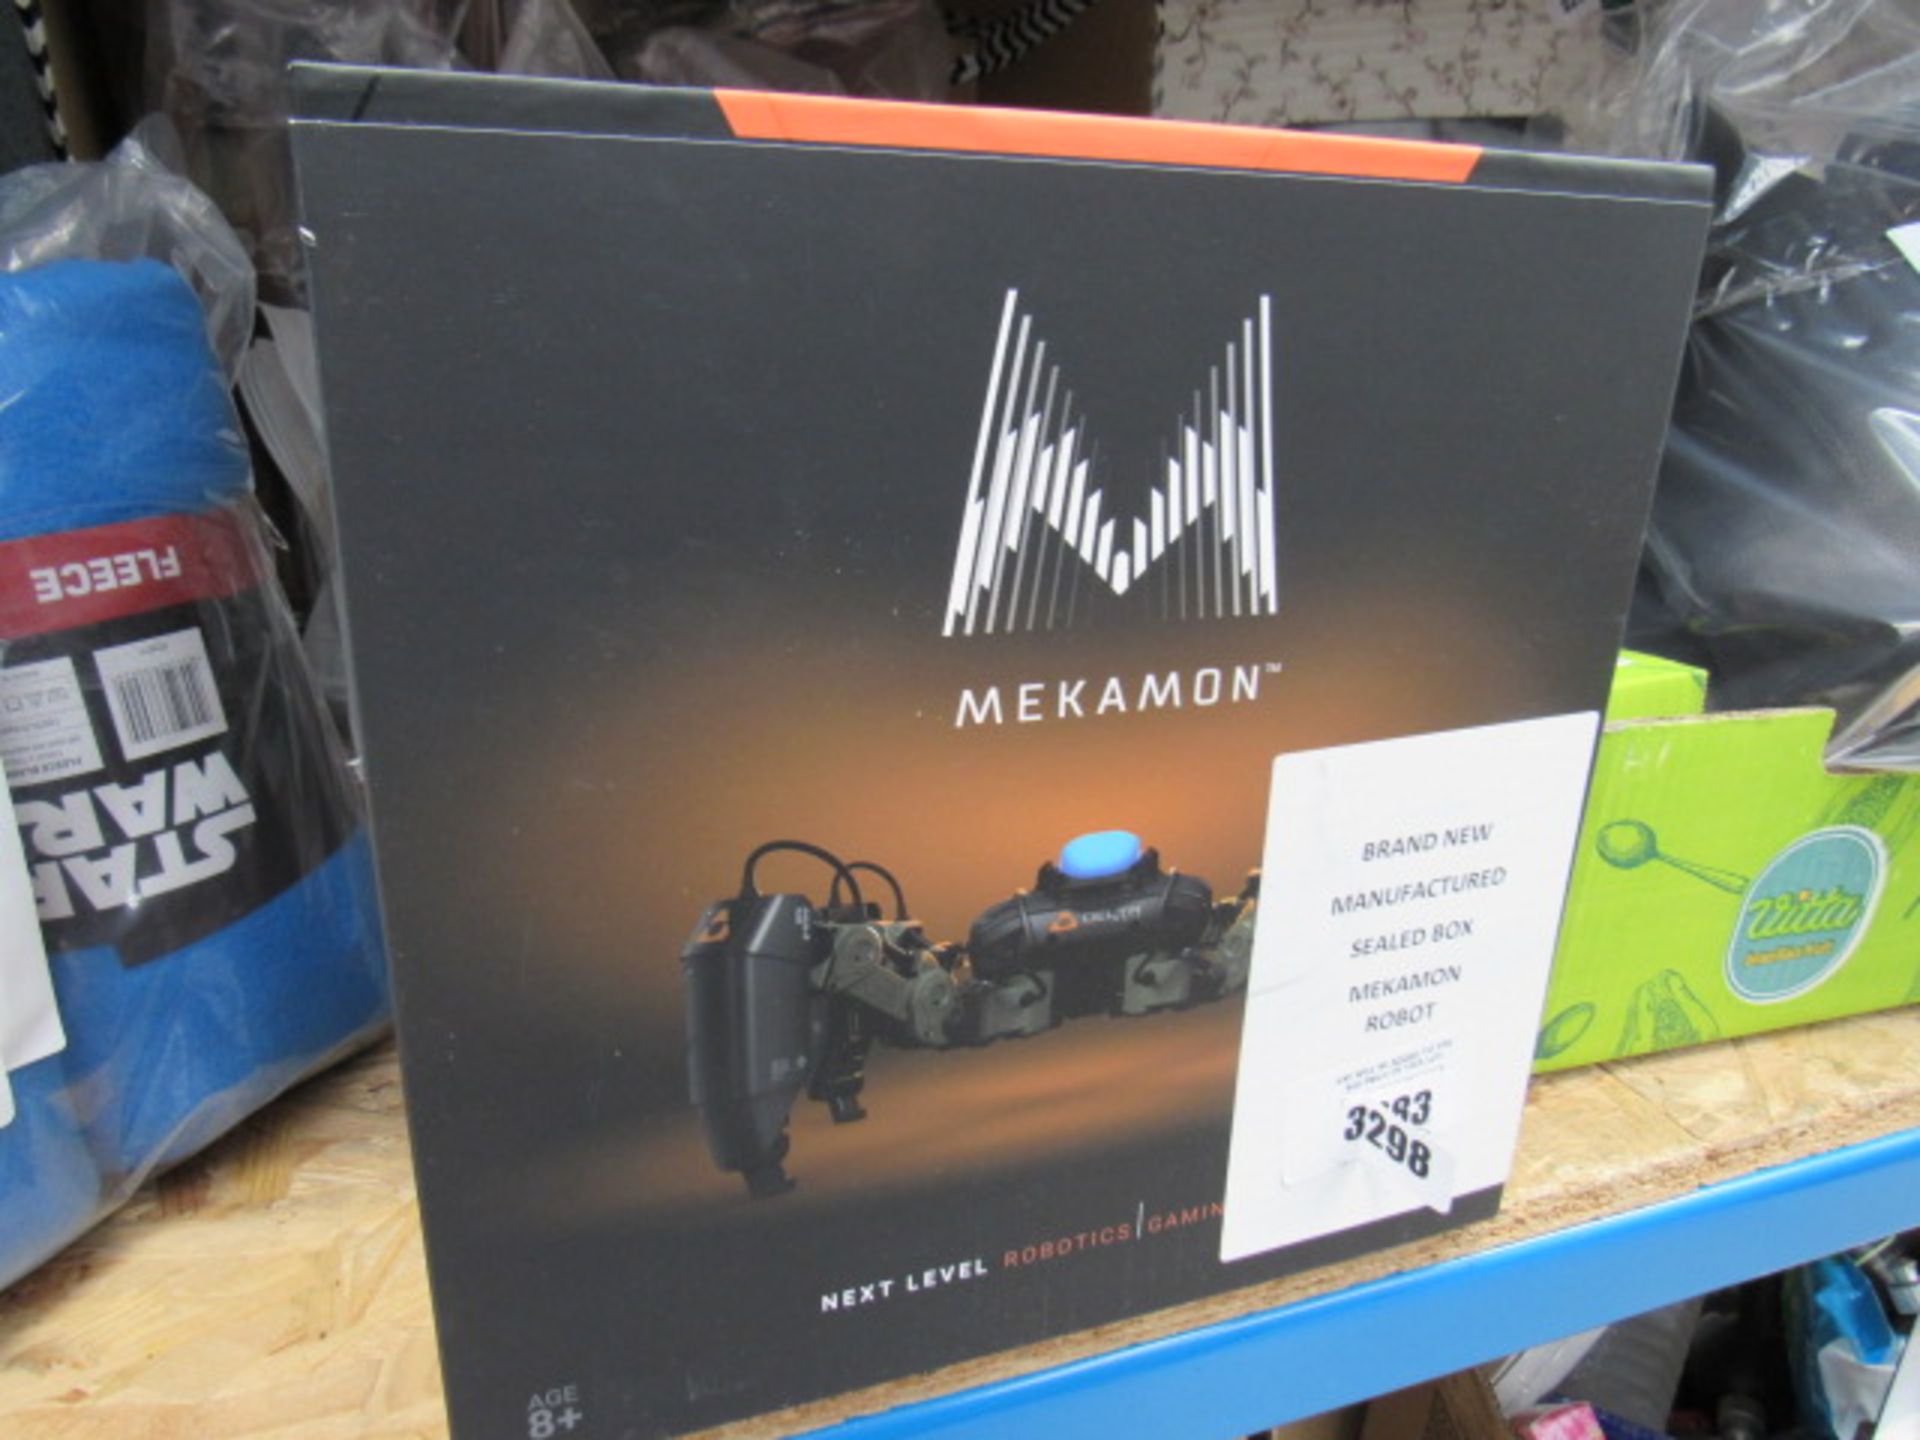 3283 - Mekamon gaming robot